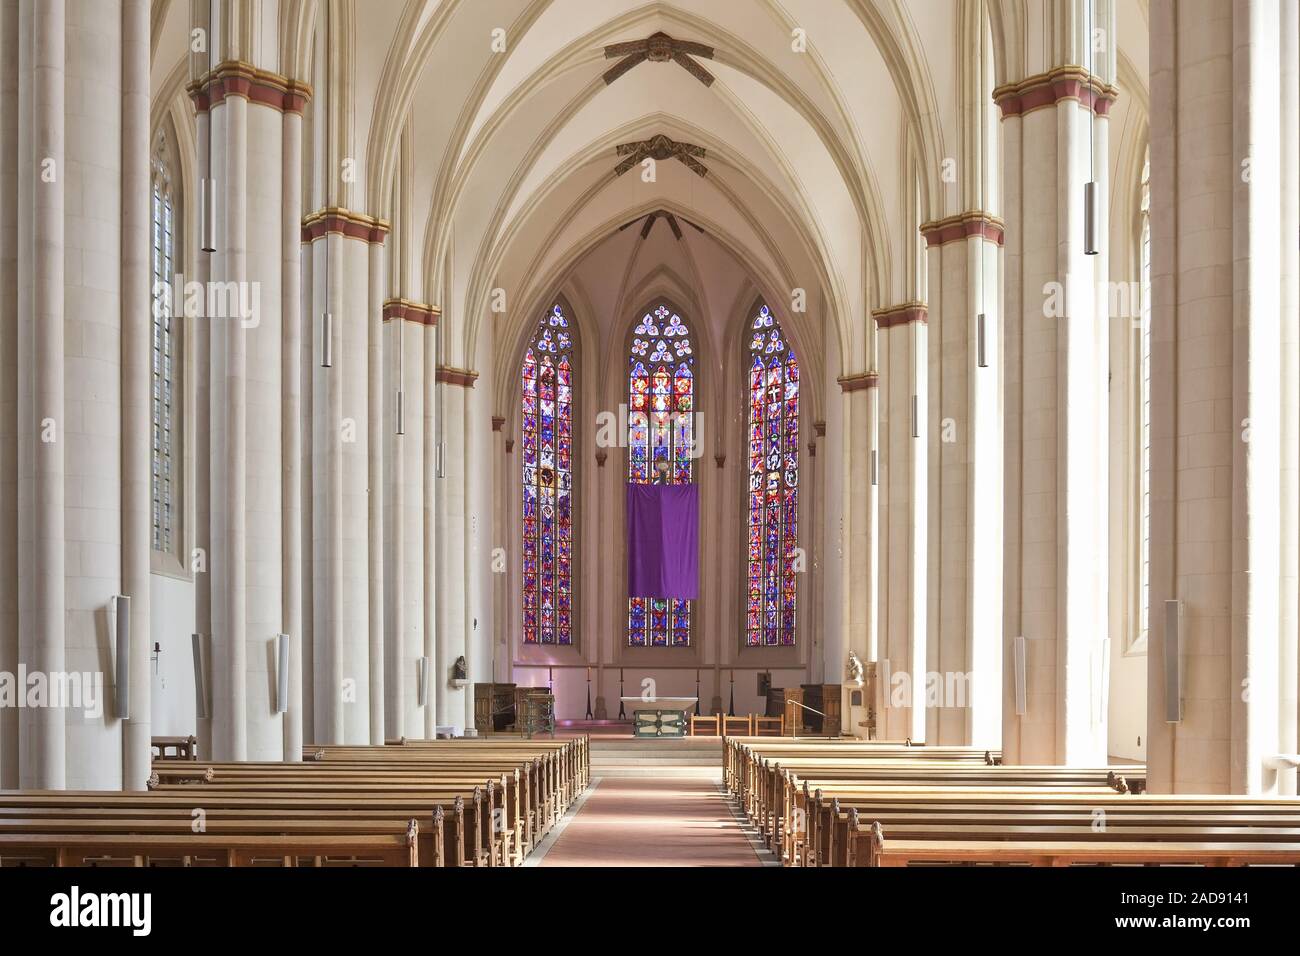 Ueberwasserkirche, inside view, Muenster, North Rhine-Westphalia, Germany, Europe Stock Photo